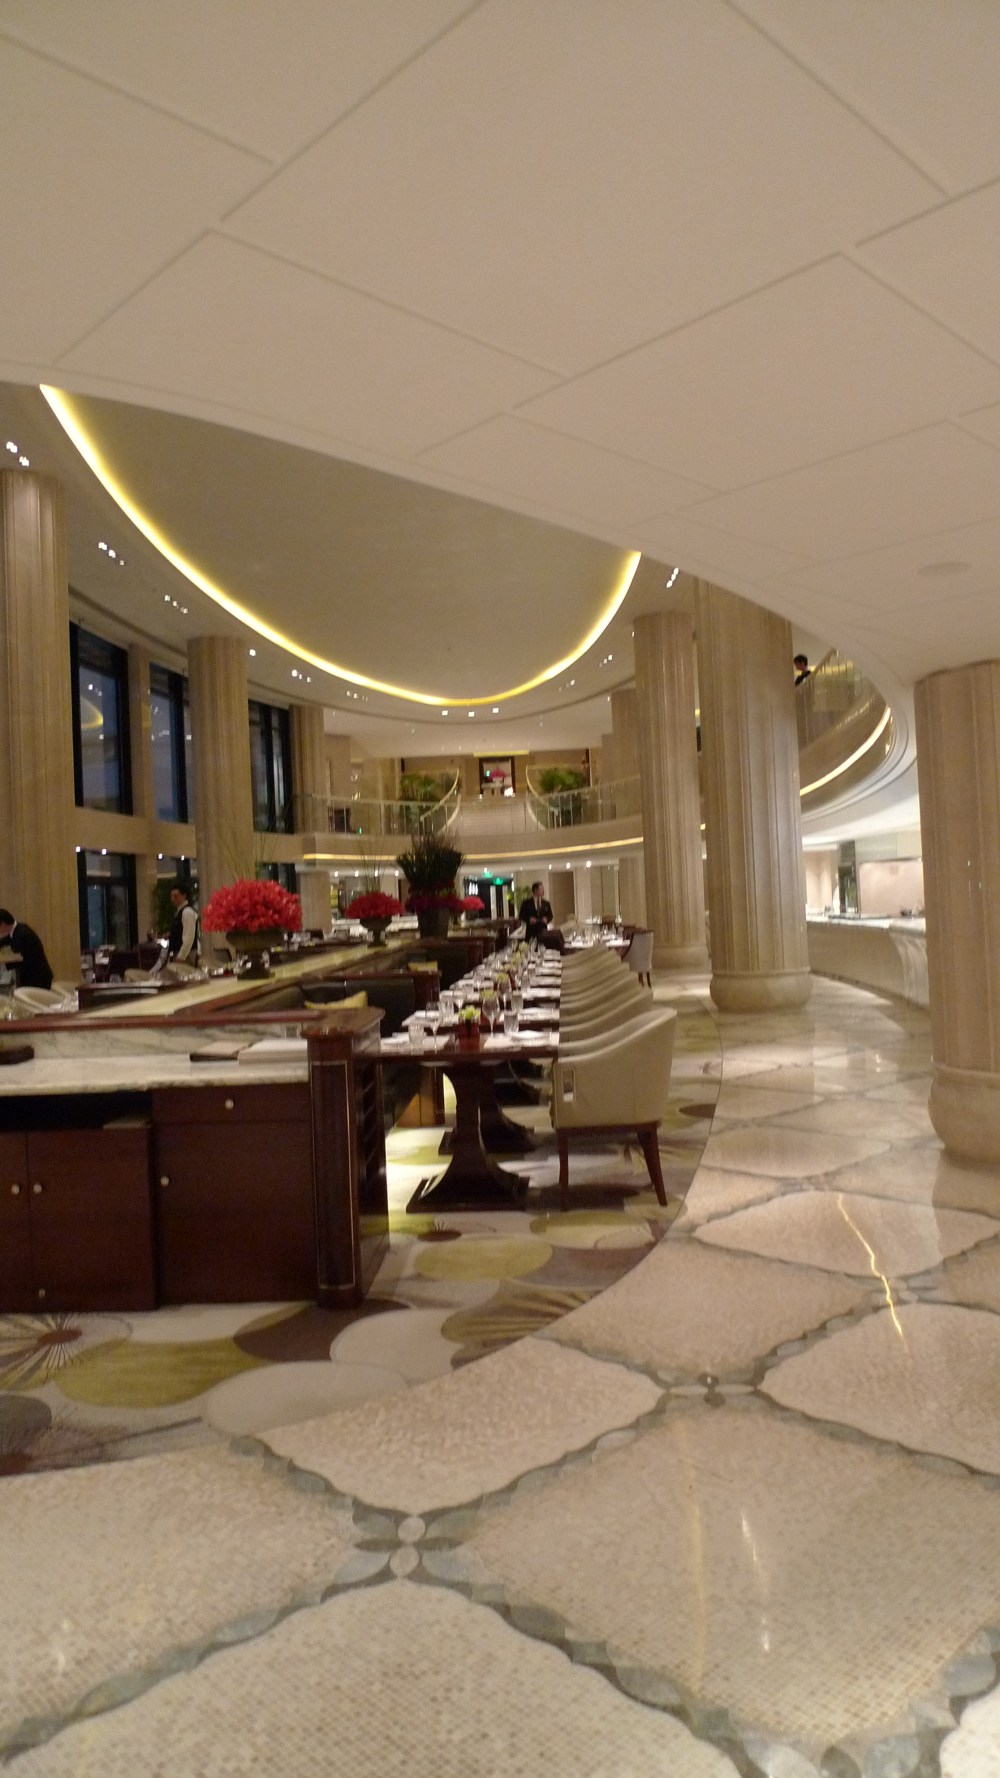 上海华尔道夫酒店(The Waldorf Astoria OnTheBund)(HBA)10.9第10页更新_L1050018.JPG